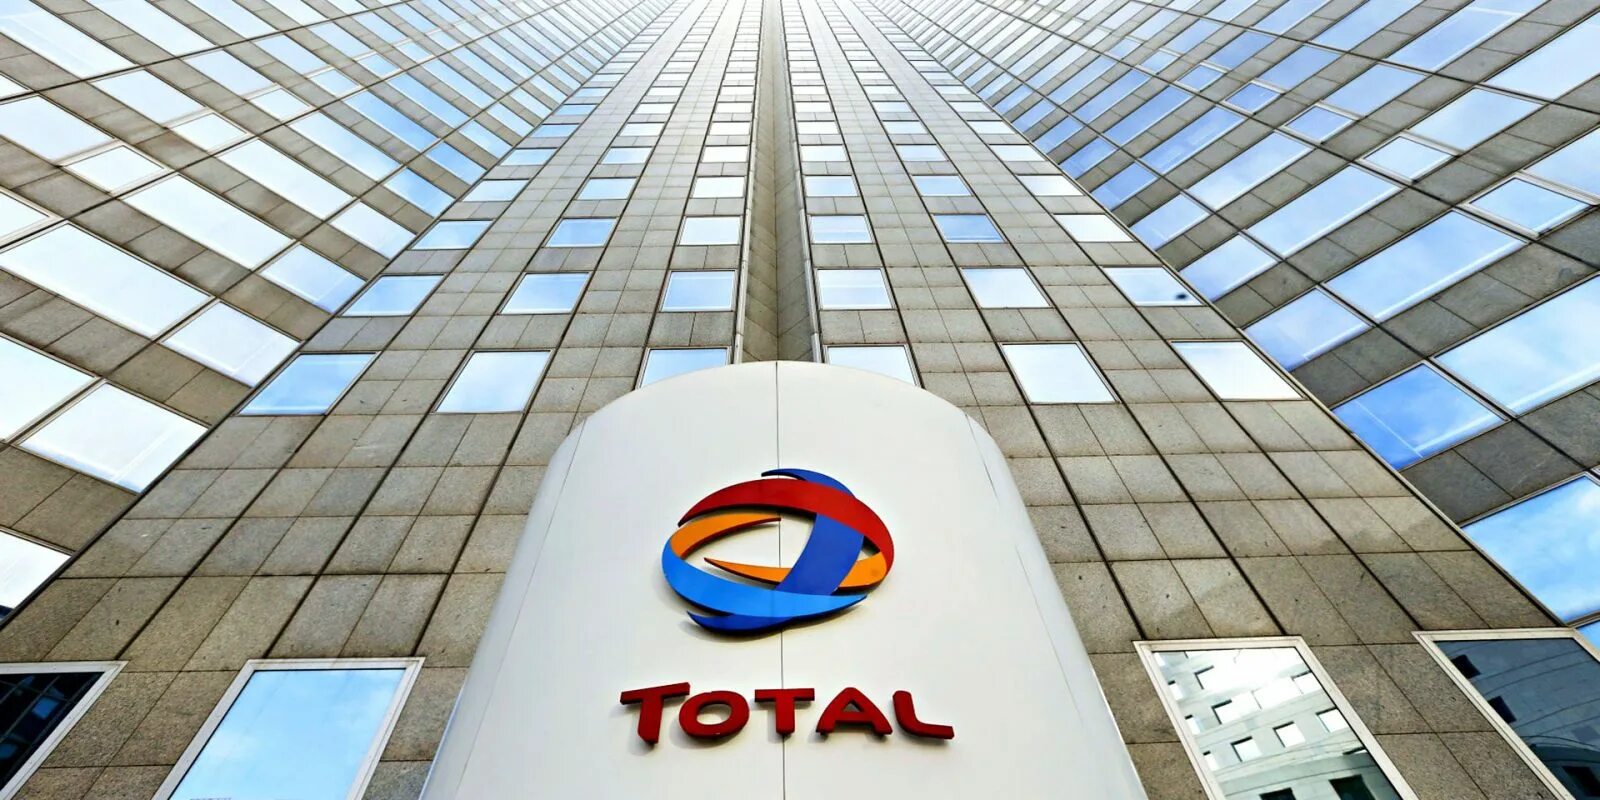 Total company. Тотал компания Франция. Тотал нефтяная компания. Total Energies нефтяная компания. Французская Тоталь.